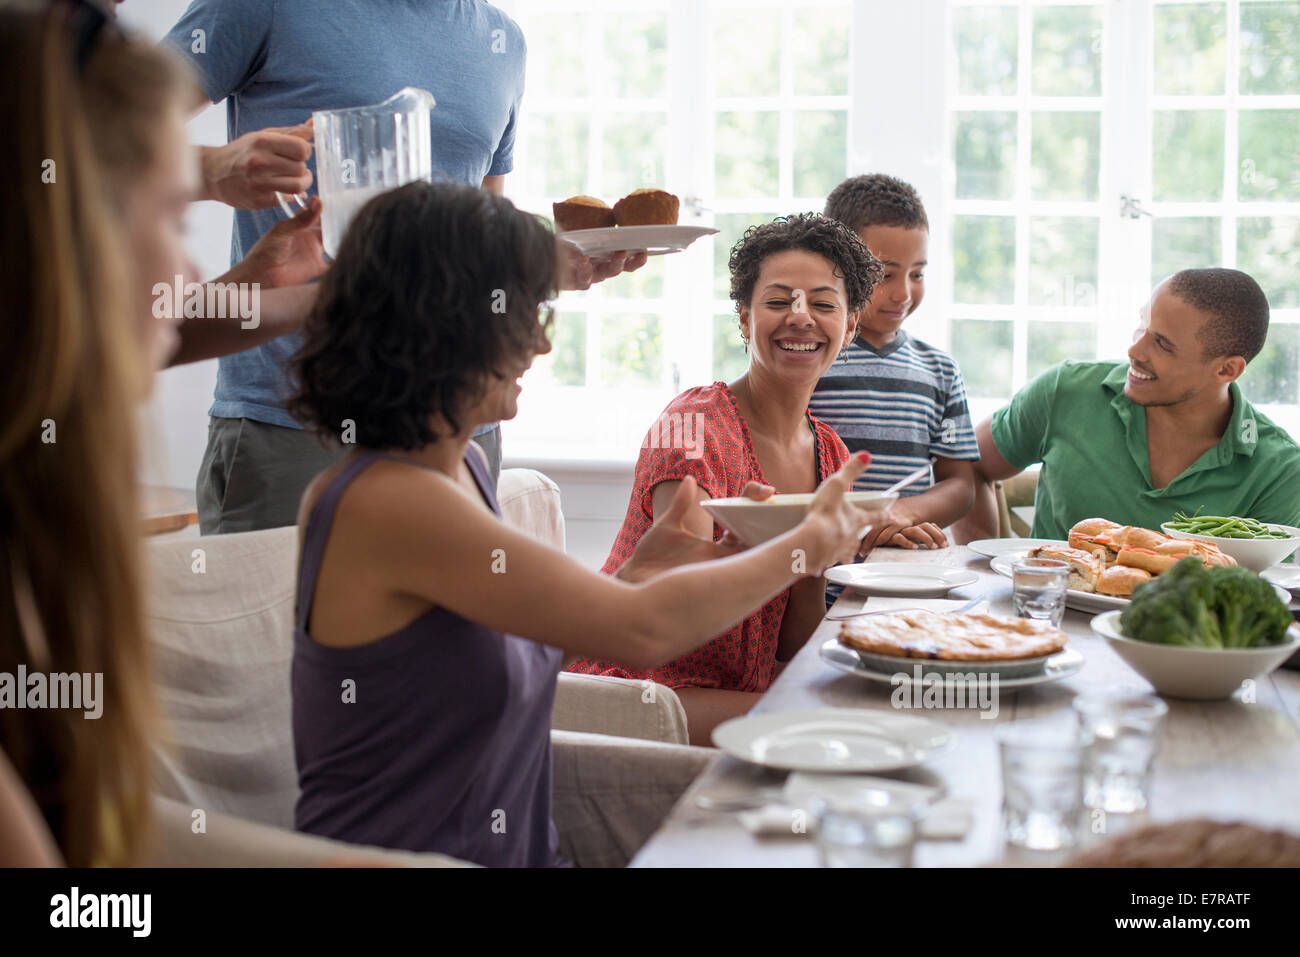 Una reunión familiar, hombres, mujeres y niños alrededor de una mesa de comedor de compartir una comida. Foto de stock